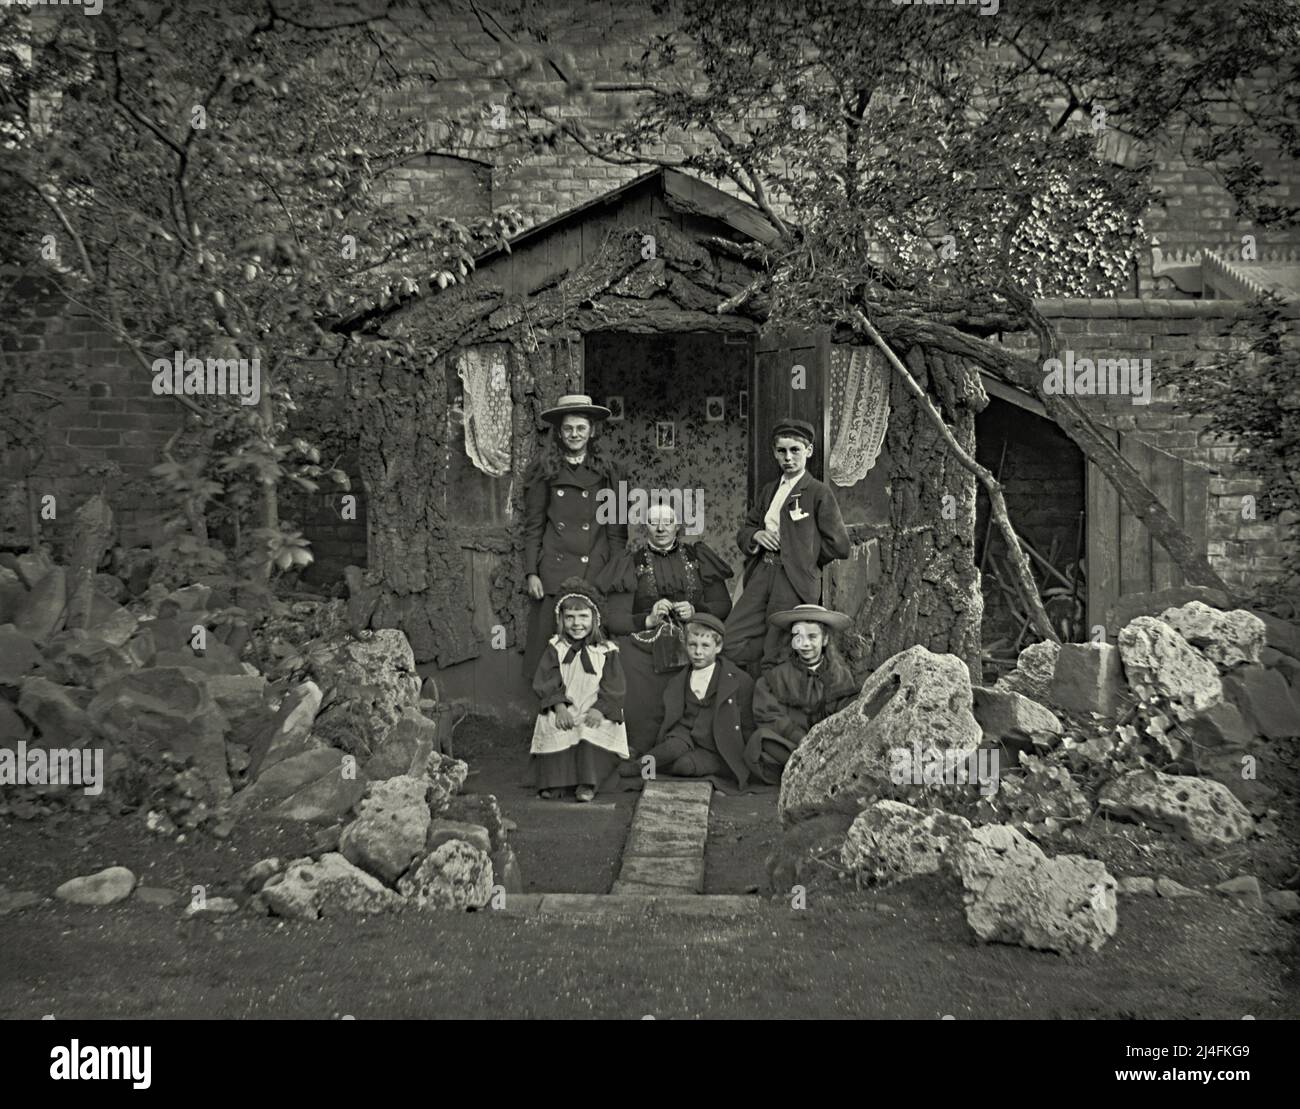 Eine Familiengruppe mit einer Mutter und fünf Kindern posiert vor ihrem viktorianischen Sommerhaus in Großbritannien um 1900. Das rustikale Sommerhaus hat Fenster mit Netzvorhängen, Tapeten und Bilder an der Wand. Daneben befindet sich ein Schuppen mit Stauraum. Vor der Familie befindet sich ein beeindruckender Steingarten mit massiven Felsen und Felsbrocken. Dies ist einem viktorianischen Glasnegativ entnommen – einem Vintage-Foto aus dem Jahr 1800s/1900s. Stockfoto